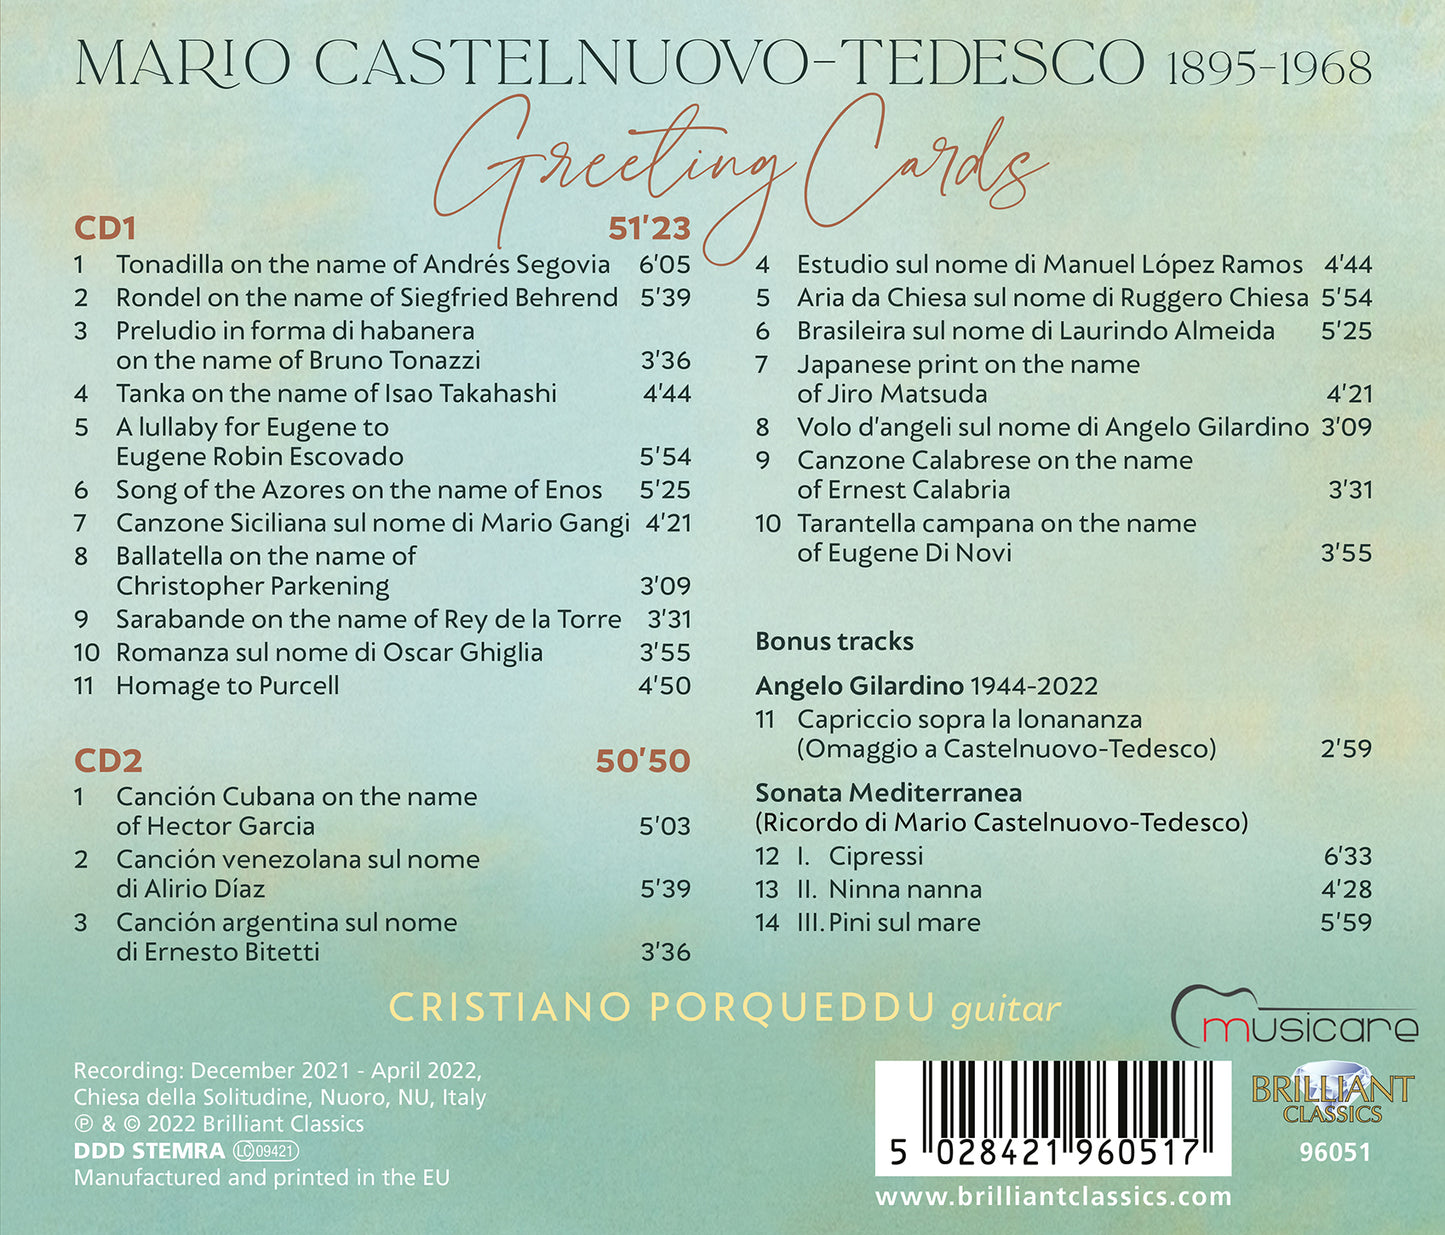 Castelnuovo-Tedesco: Greeting Cards  Cristiano Porqueddu